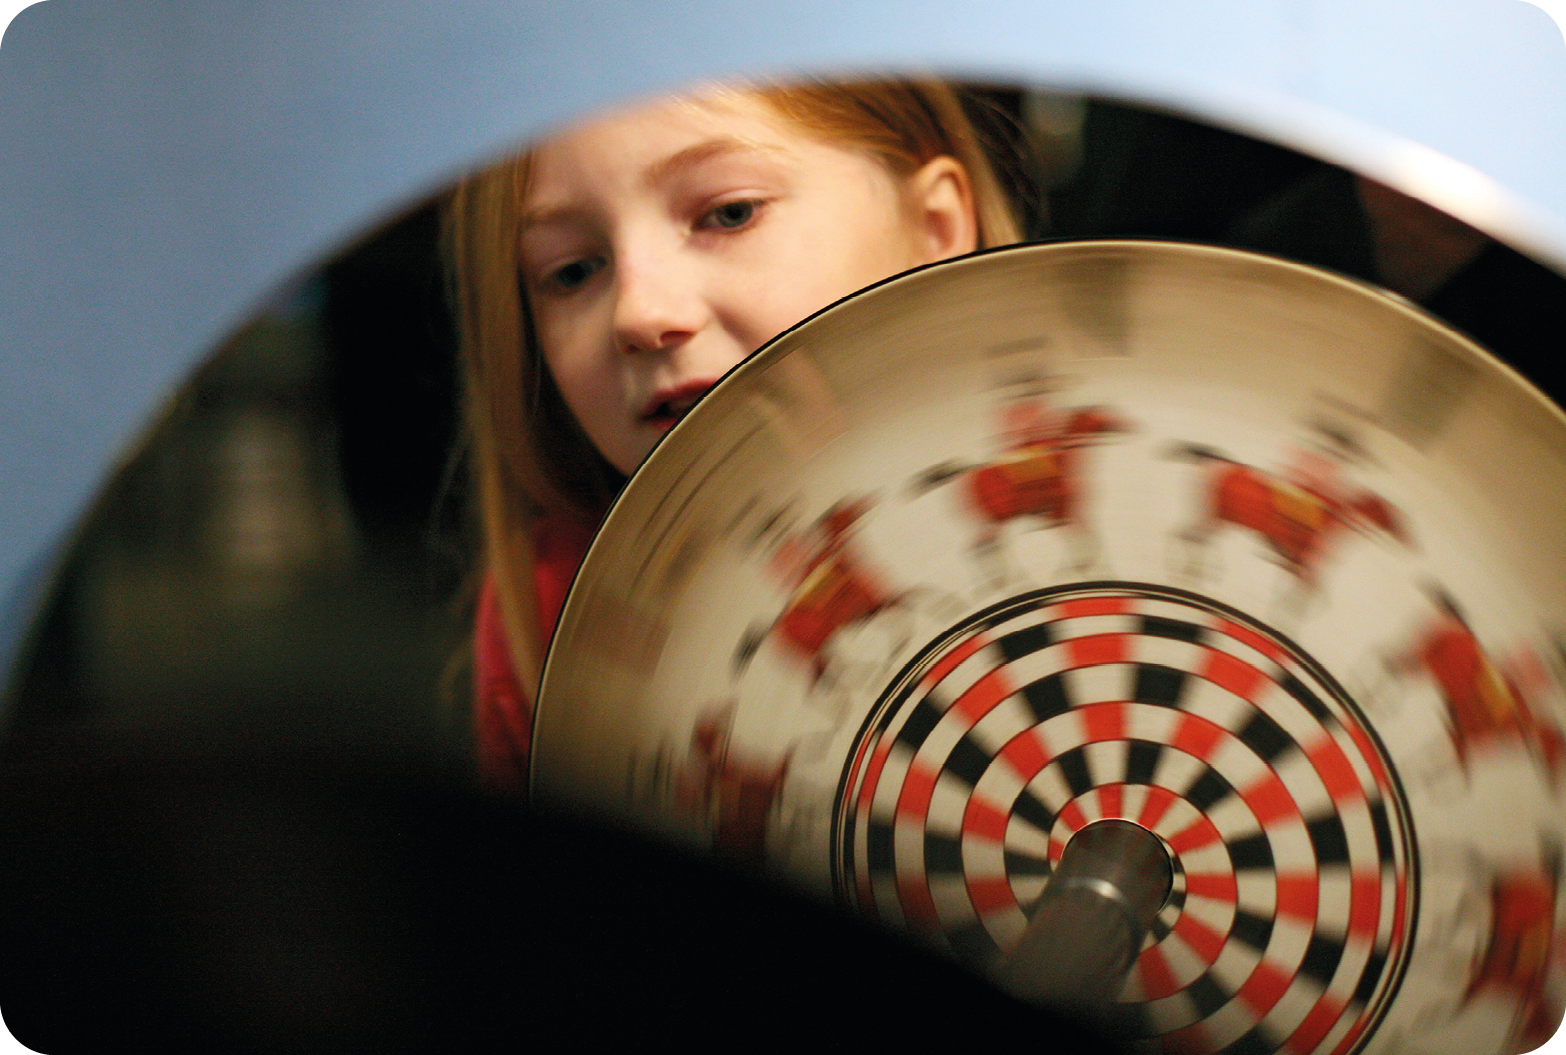 Fotografia. Destaque de um espelho mostrando a imagem de uma menina segurando um objeto circular com desenhos semelhantes em sua superfície, o qual está em movimento.